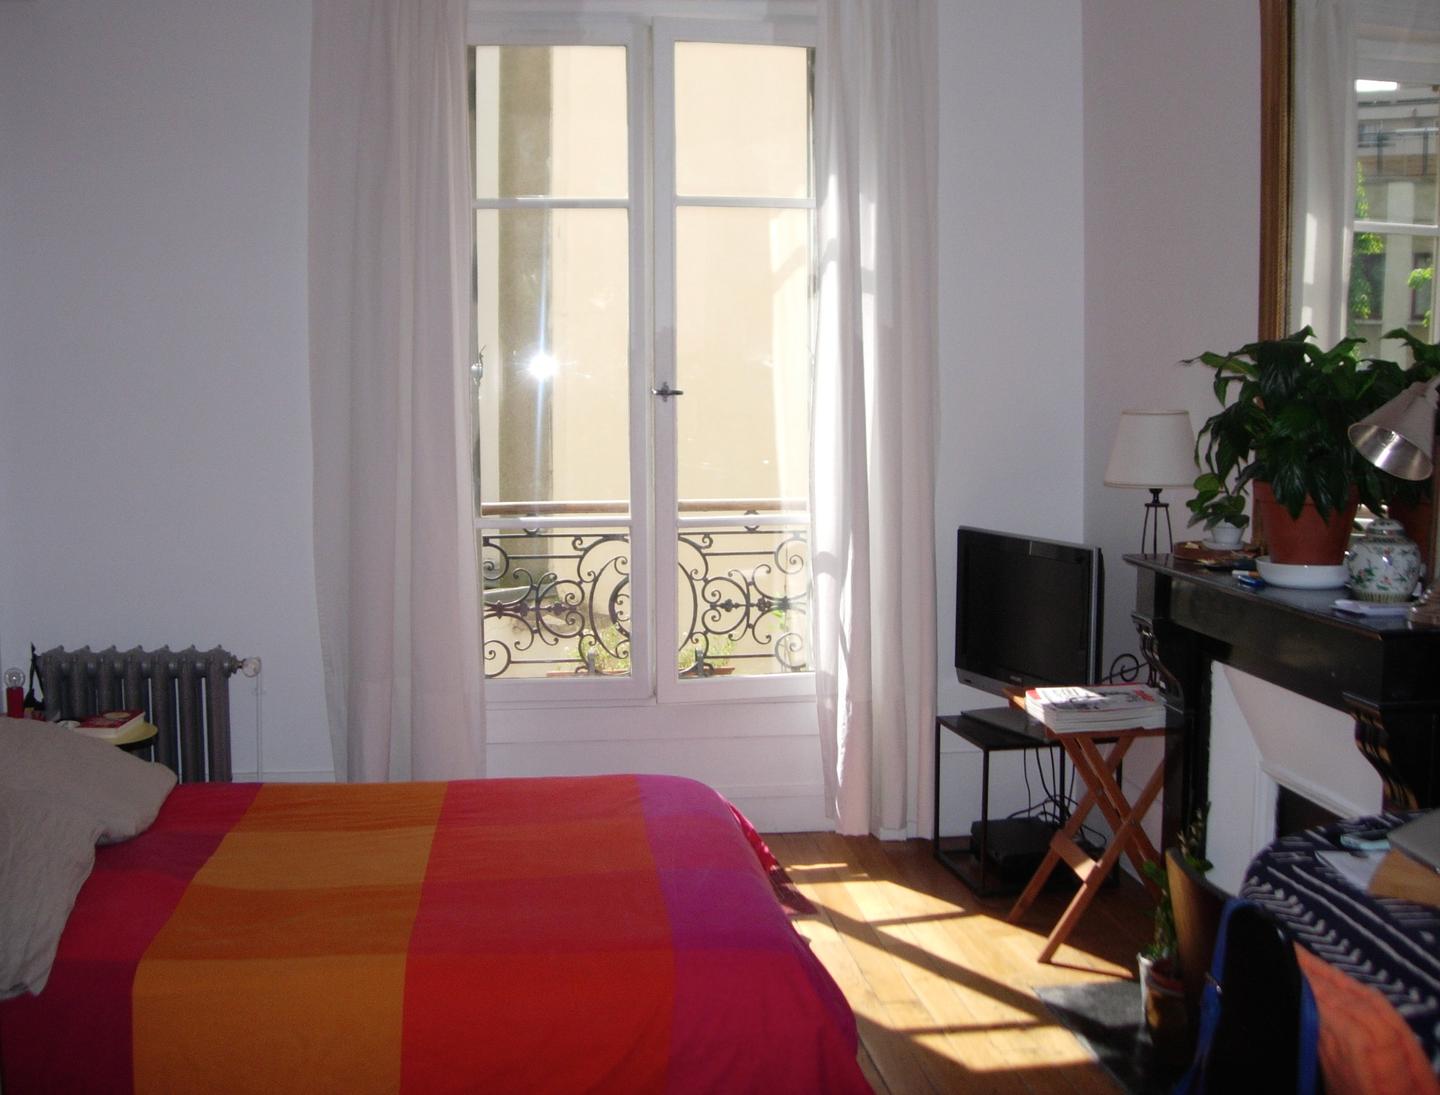 Hôte GreenGo: Eco logement Parisien sur 2 niveaux (RDC et 1er étage). - Image 2